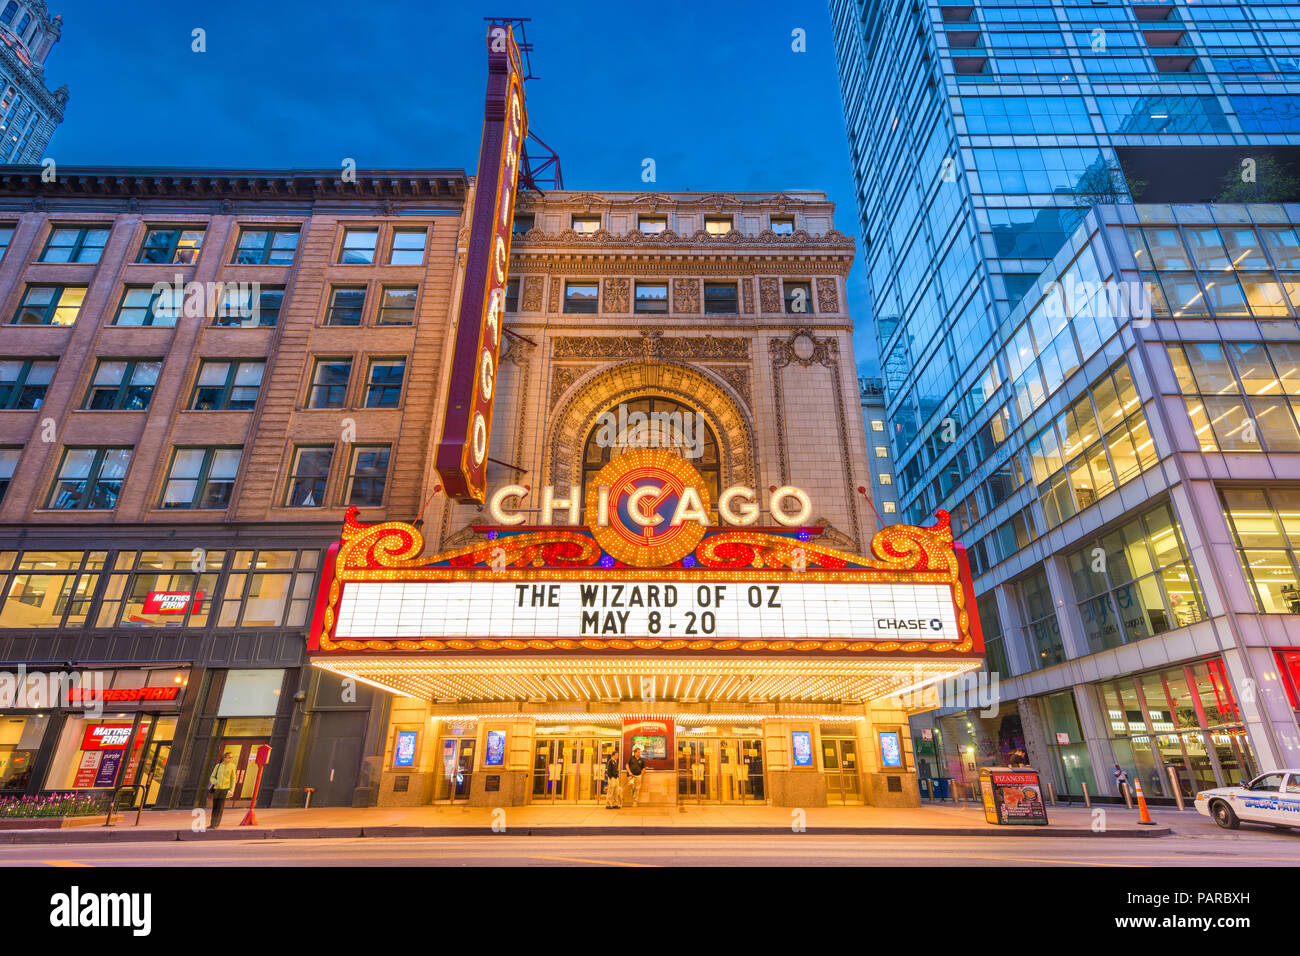 CHICAGO, Illinois - 10. MAI 2018: Das Wahrzeichen von Chicago Theater an der State Street in der Dämmerung. Die historische Theater stammt aus dem Jahre 1921. Stockfoto